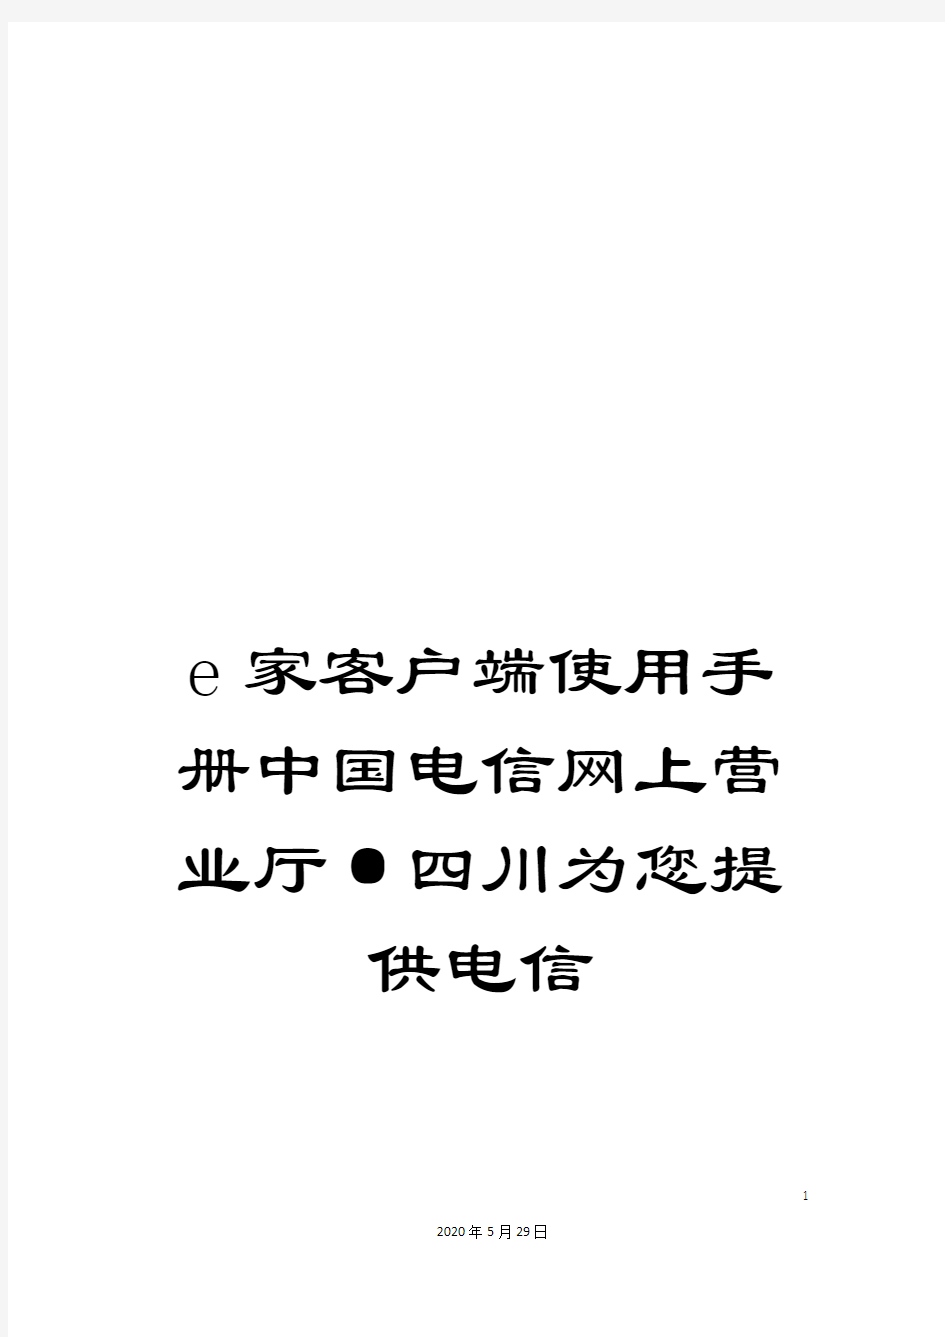 e家客户端使用手册中国电信网上营业厅·四川为您提供电信